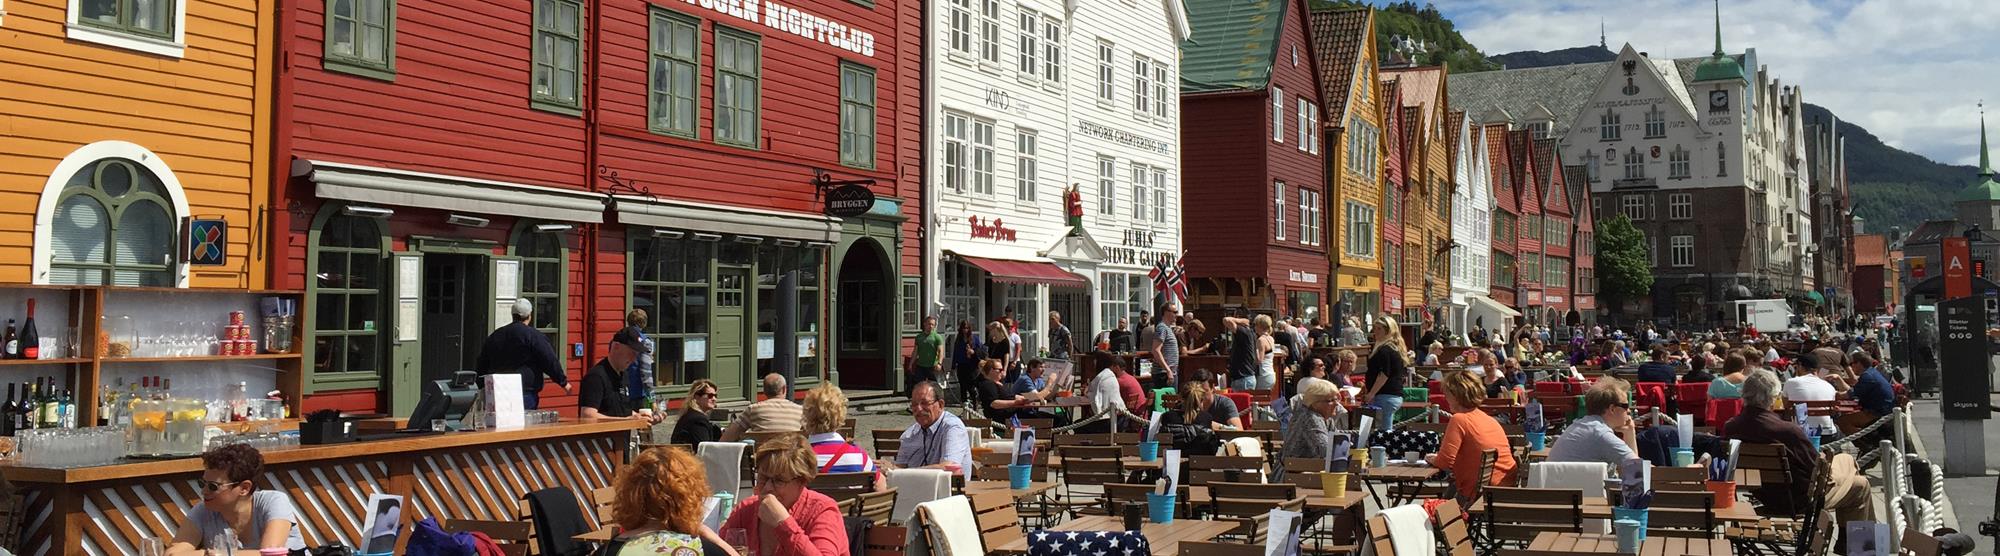 Coffee shops in Bergen